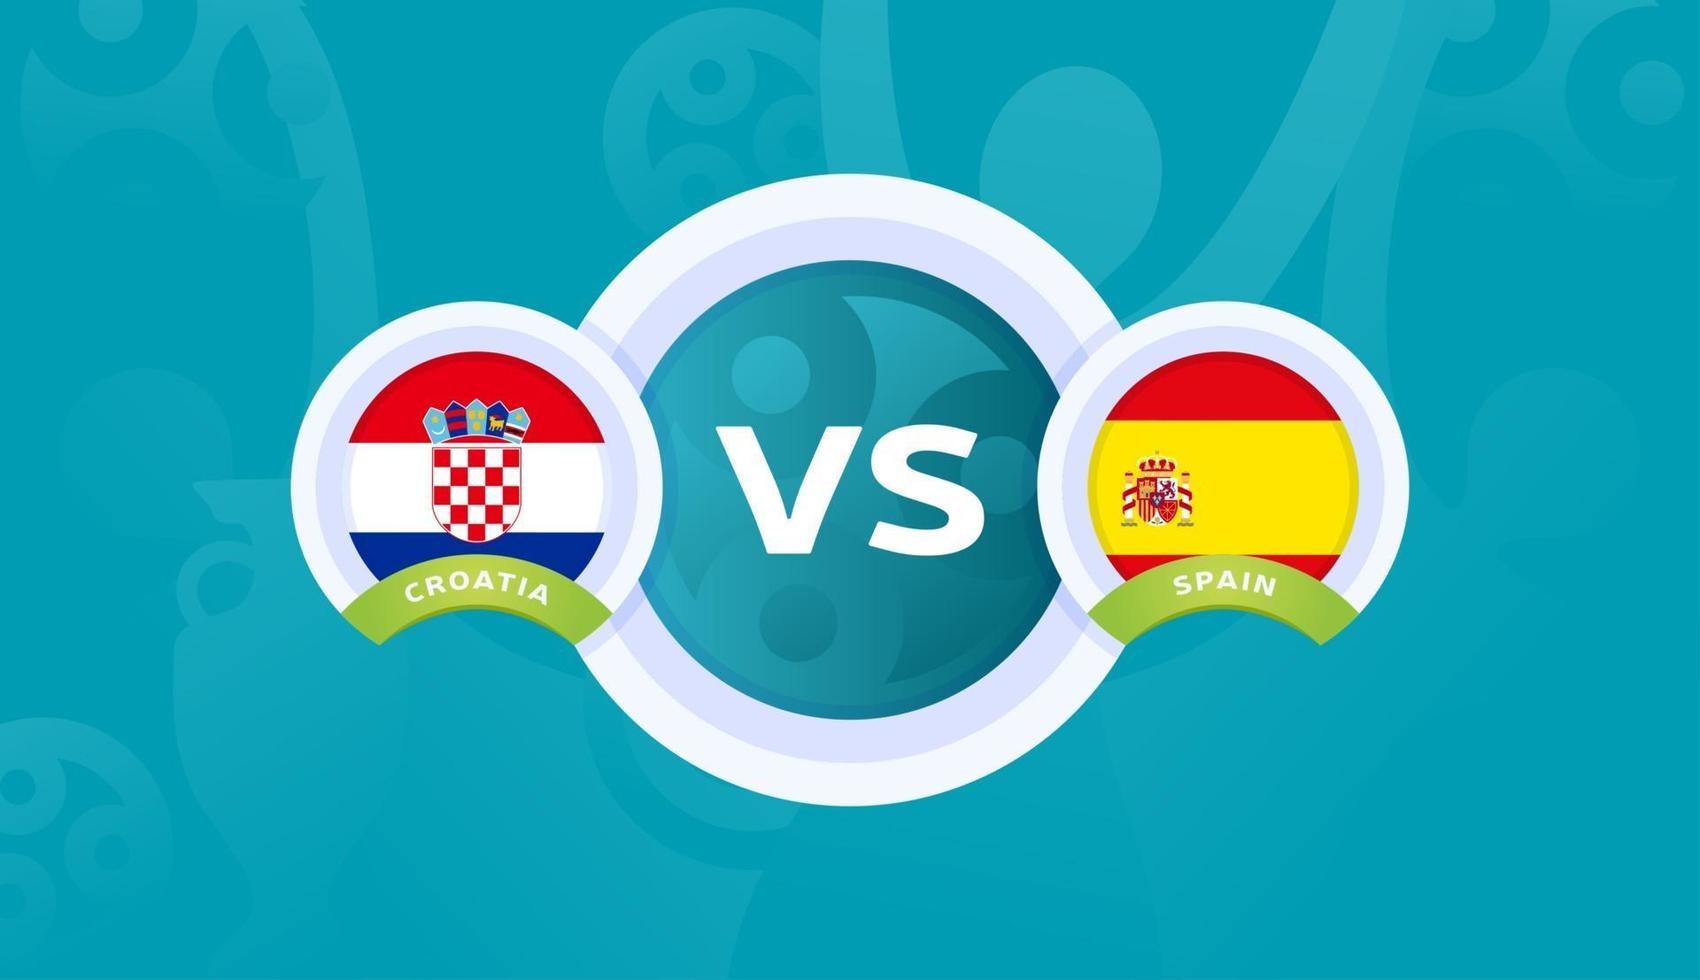 Croacia vs españa partido de octavos de final, campeonato europeo de fútbol 2020 ilustración vectorial. Campeonato de fútbol 2020 partido contra equipos intro fondo deportivo vector